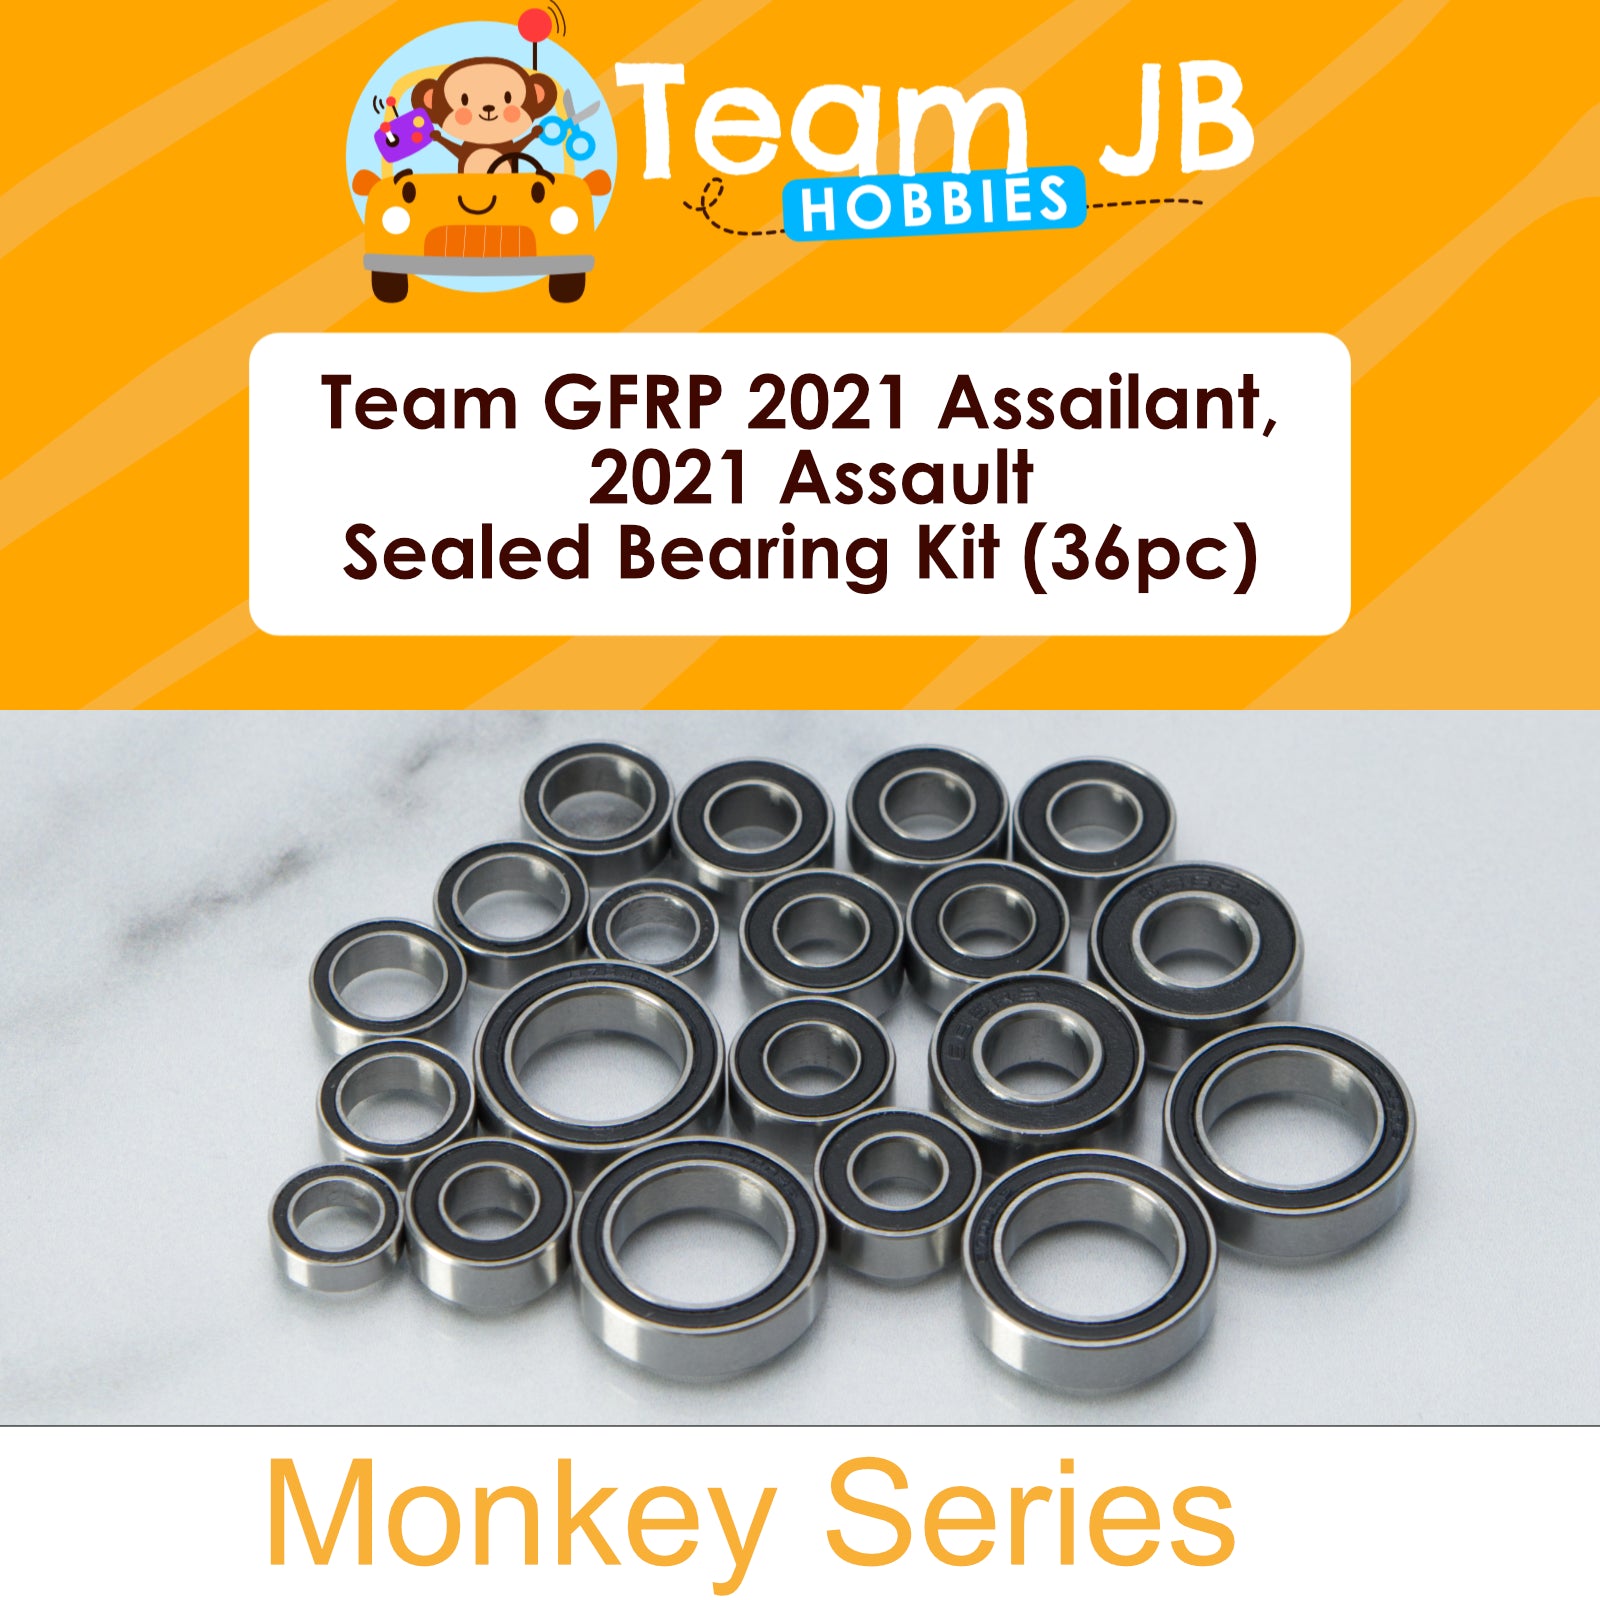 Team GFRP 2021 Assailant, 2021 Assault - Sealed Bearing Kit